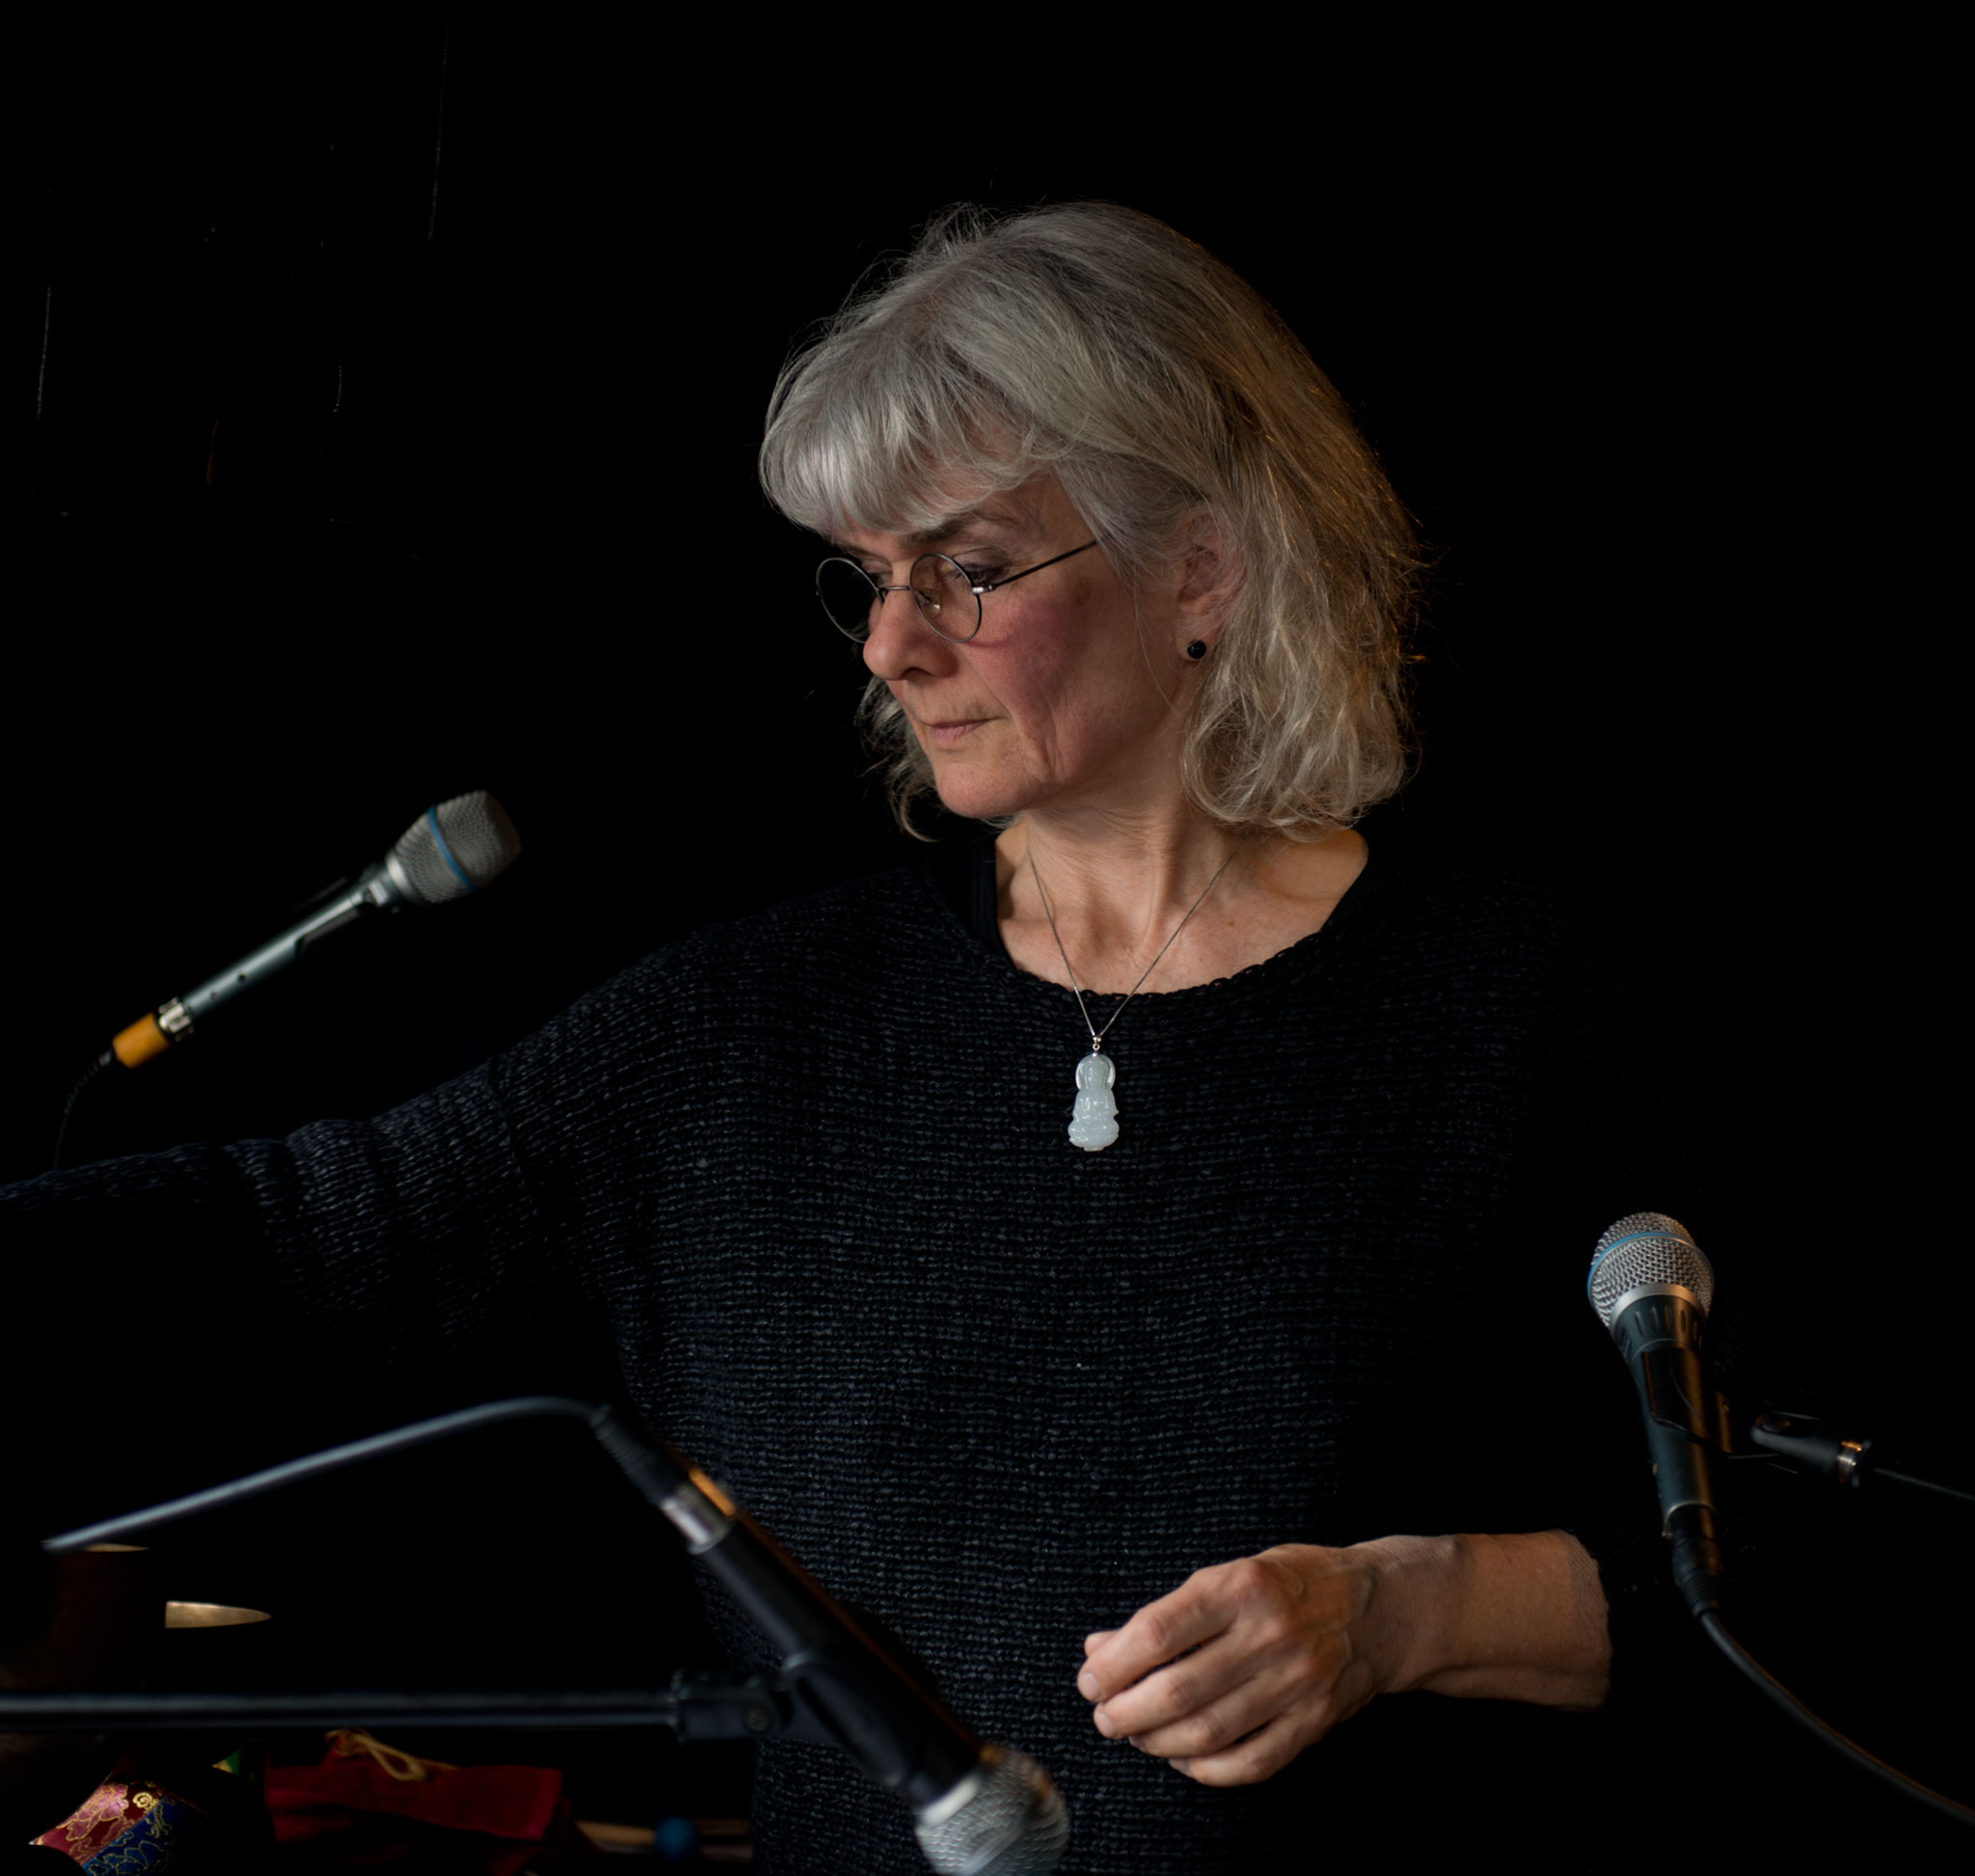 Professor Anne-Marie Giørtz ved Institutt for musikk på Høyskolen Kristiania har en 40 år lang karriere som sanger, musiker og pedagog på et høyt internasjonalt nivå. I dag er hun blant annet vokalist i bandene Trio de Janeiro og Anne-Marie Giørtz Trio. Siden 1980-tallet ar hun bidratt til en rekke produksjoner for scene, radio og fjernsyn.